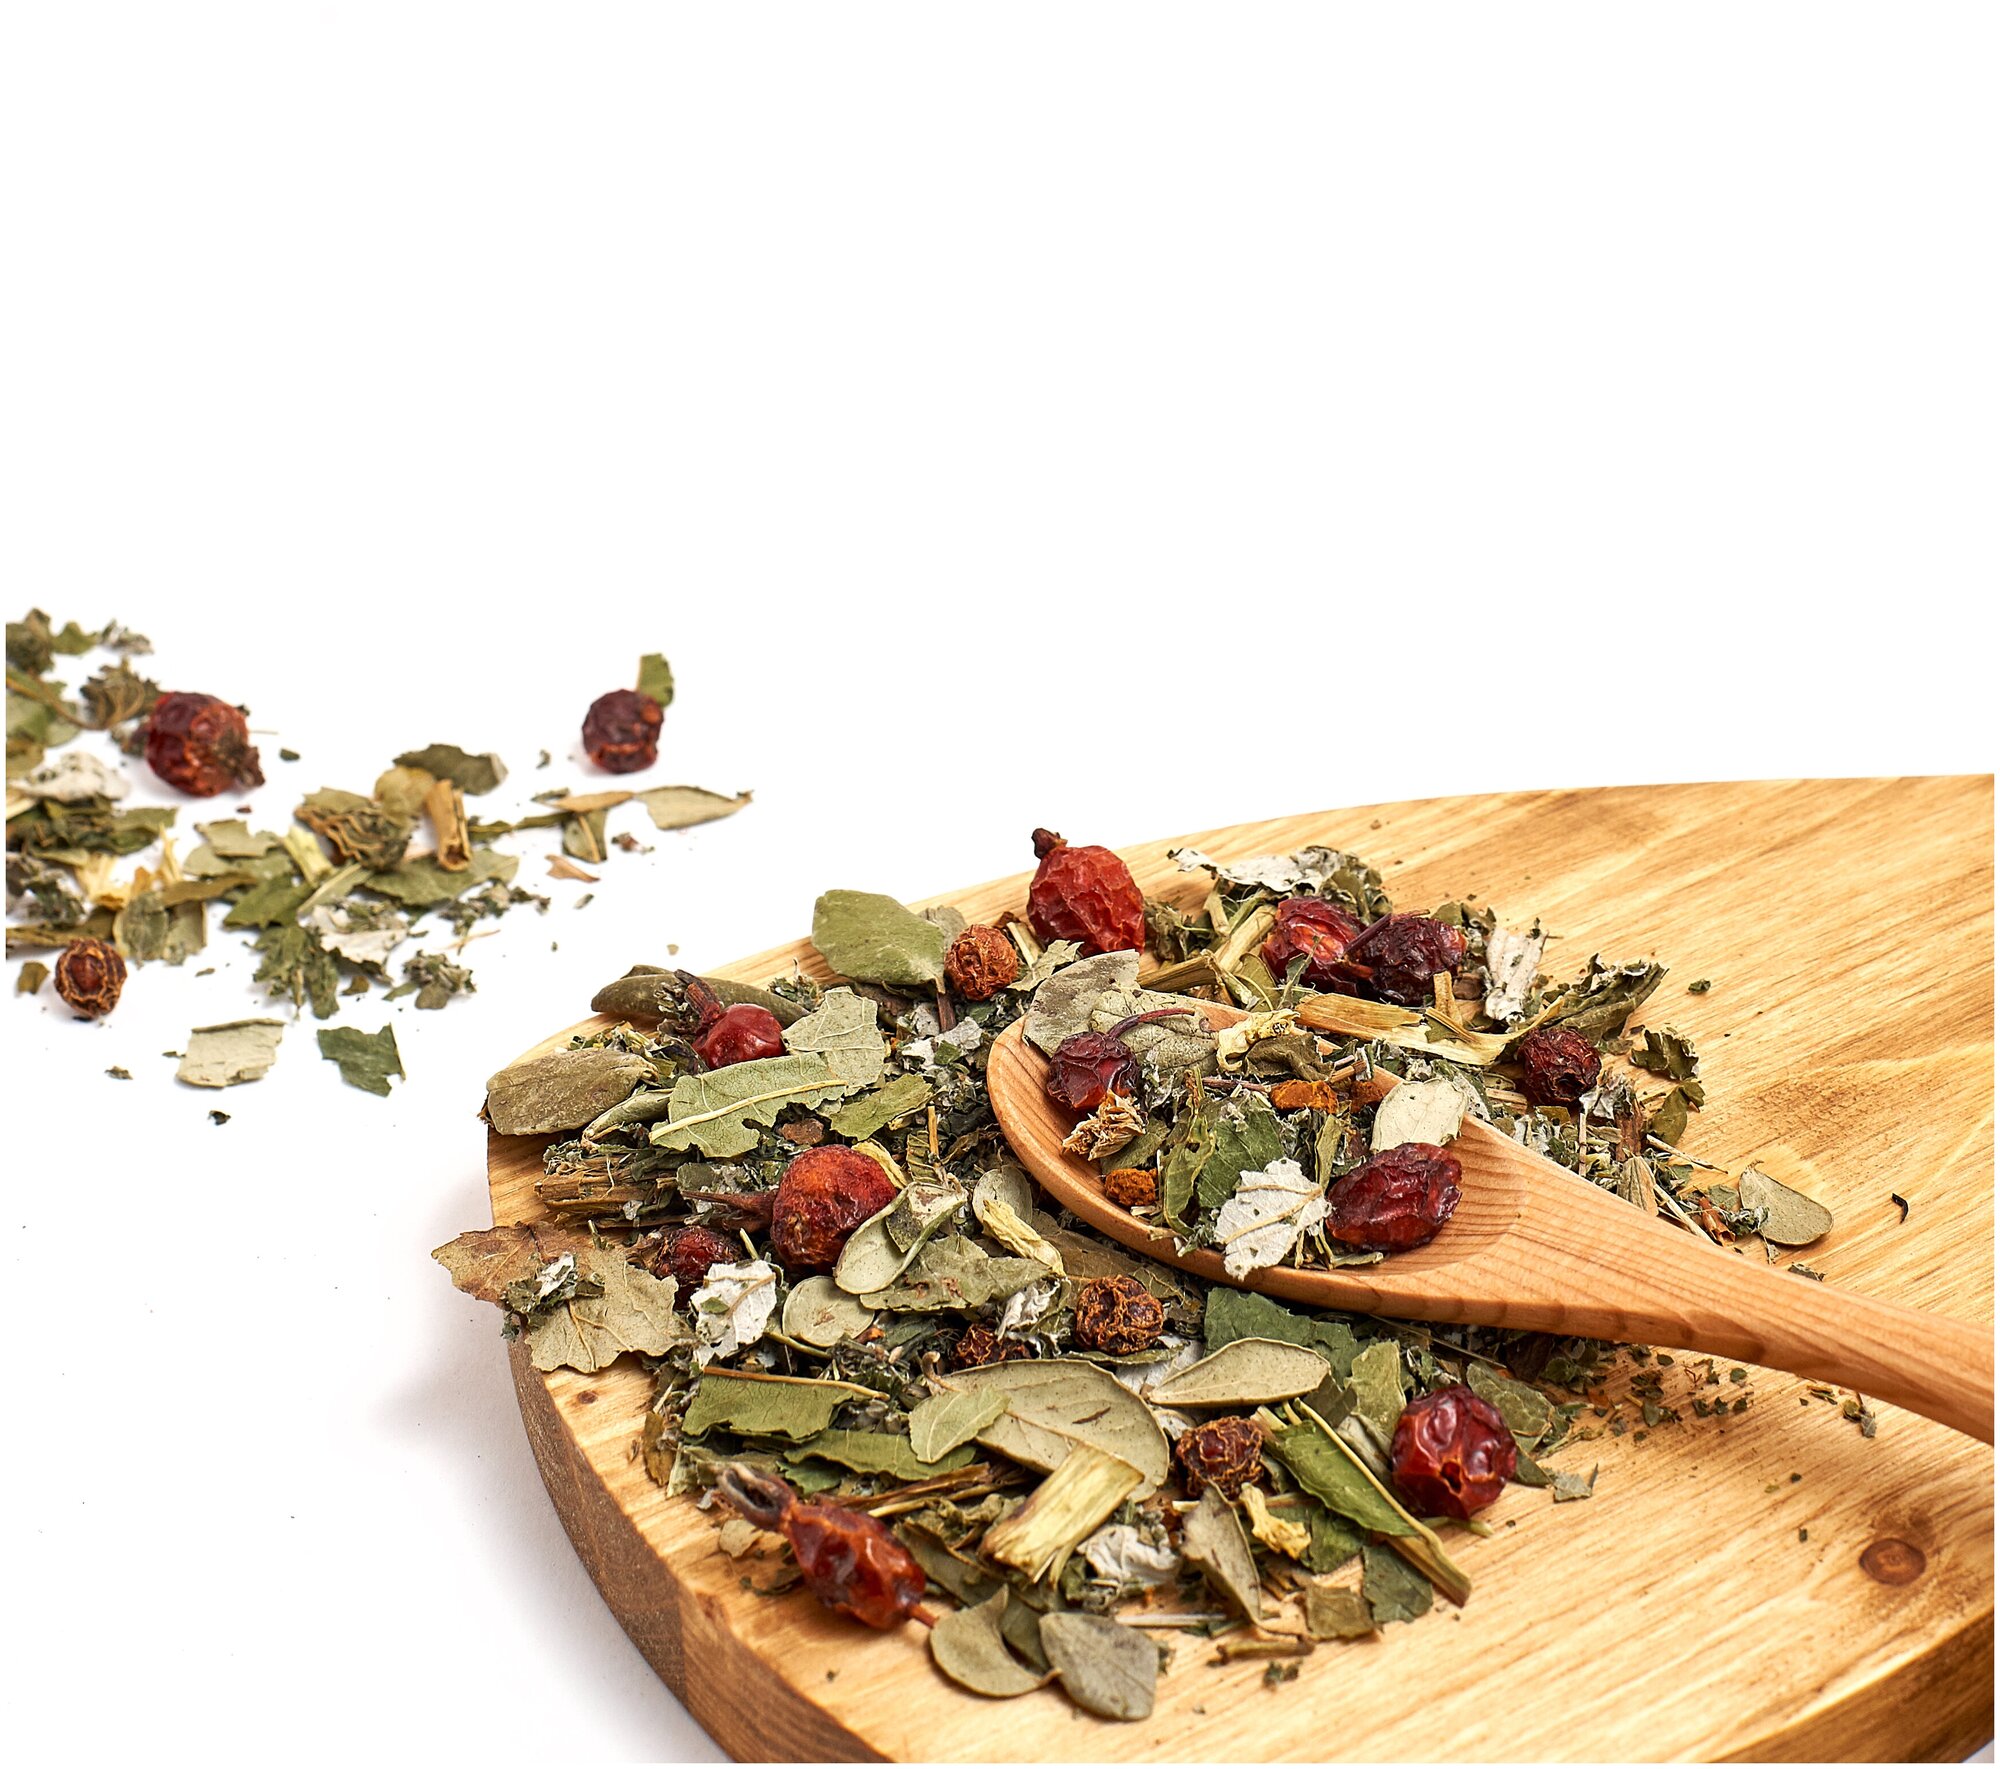 Старовер витаминный чай травяной листовой 100 гр с шиповником, чагой, калиной и облепихой Золотая душа Алтая